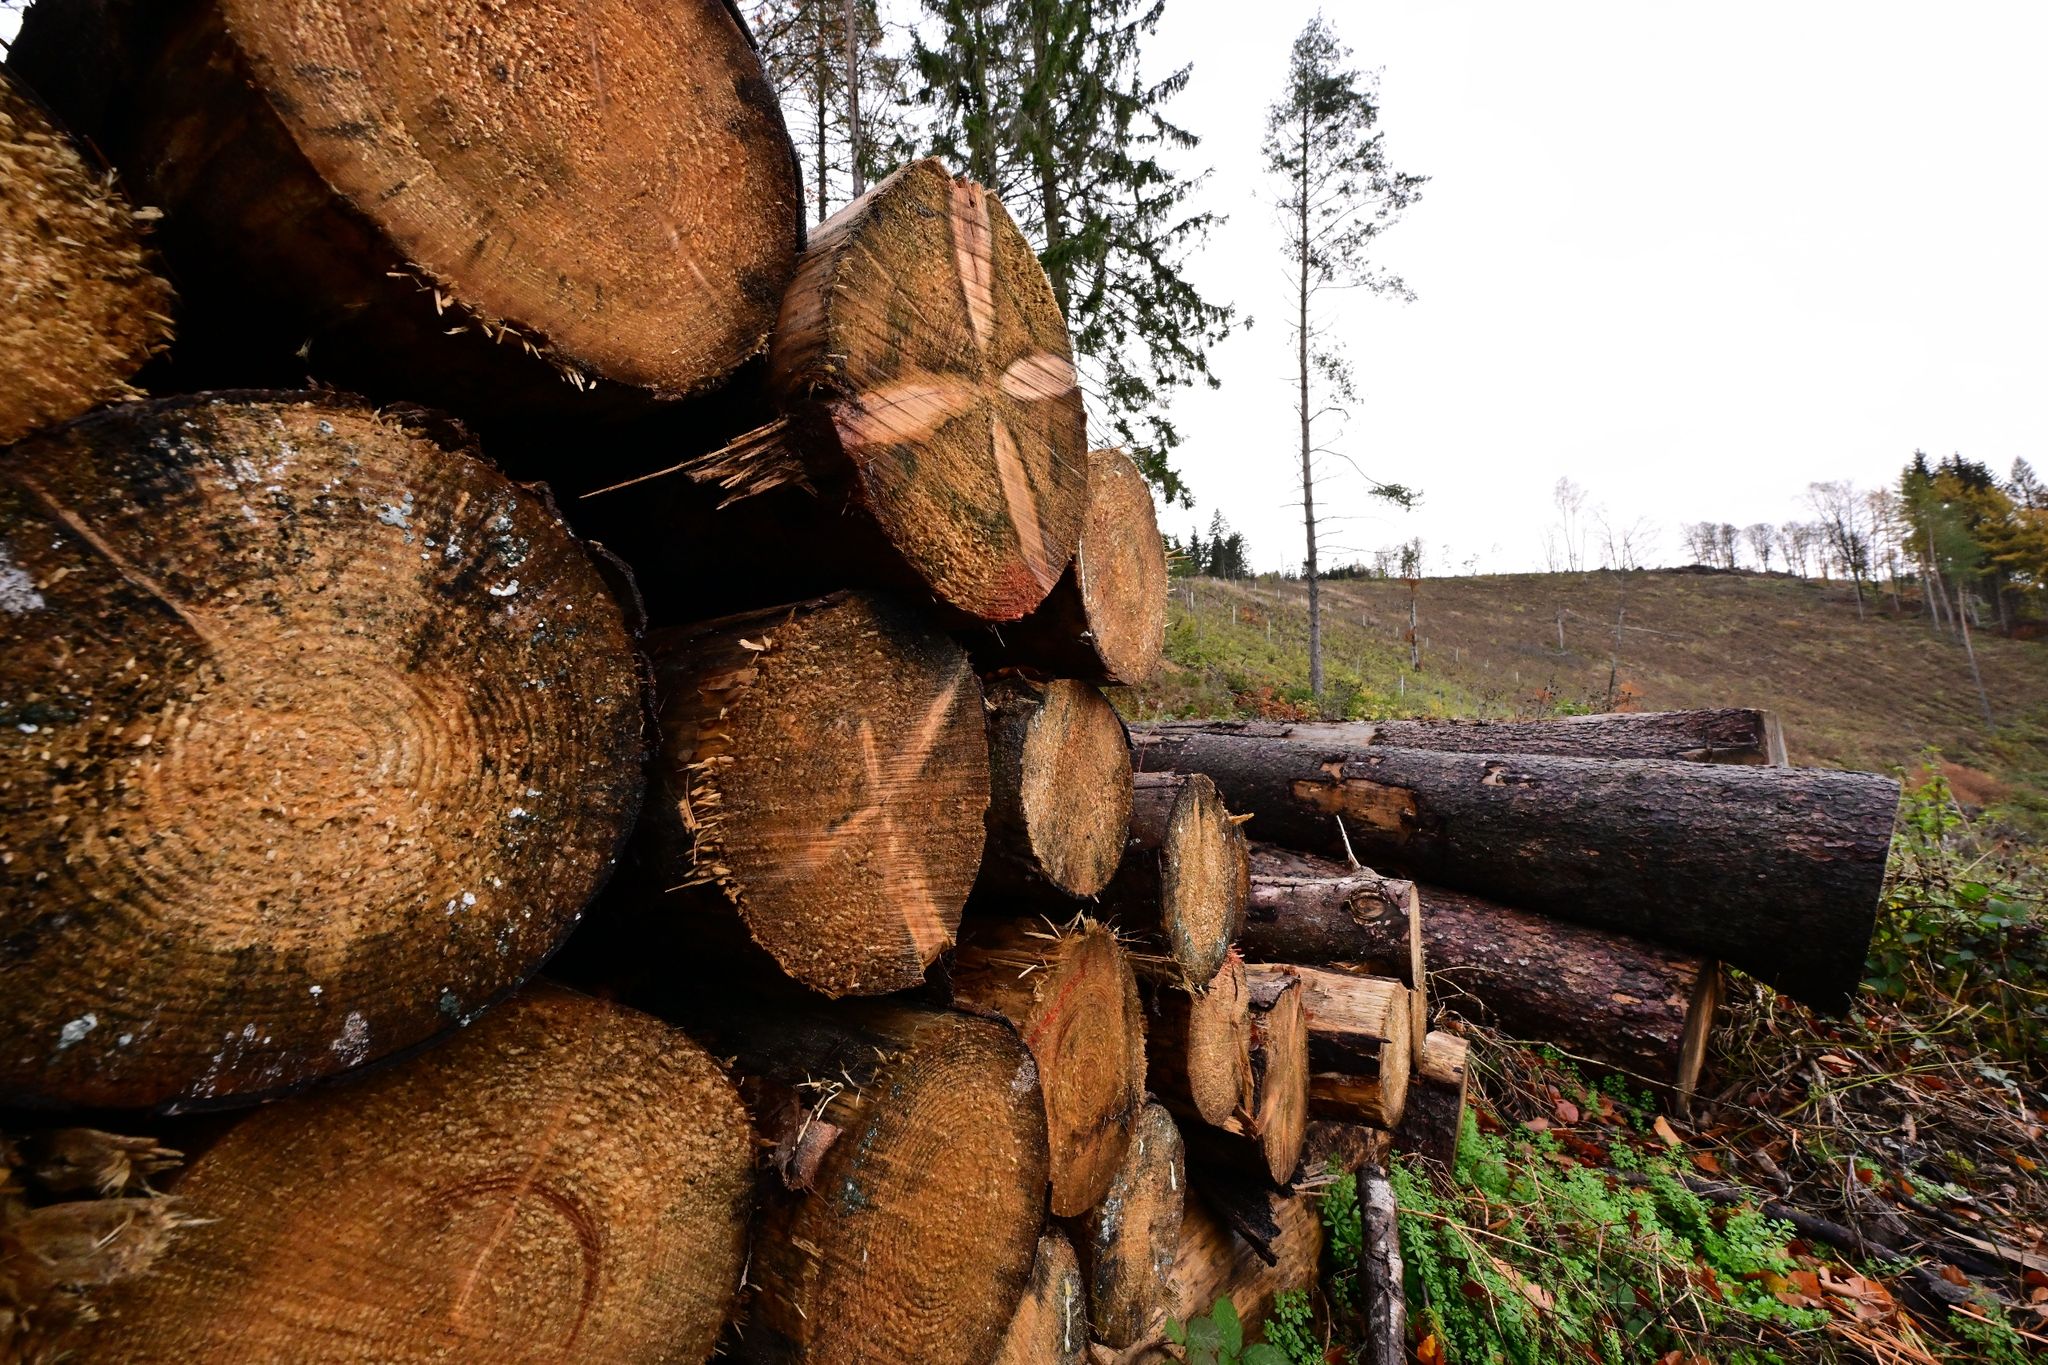 5,9 millionen kubikmeter schadholz aus wäldern geräumt